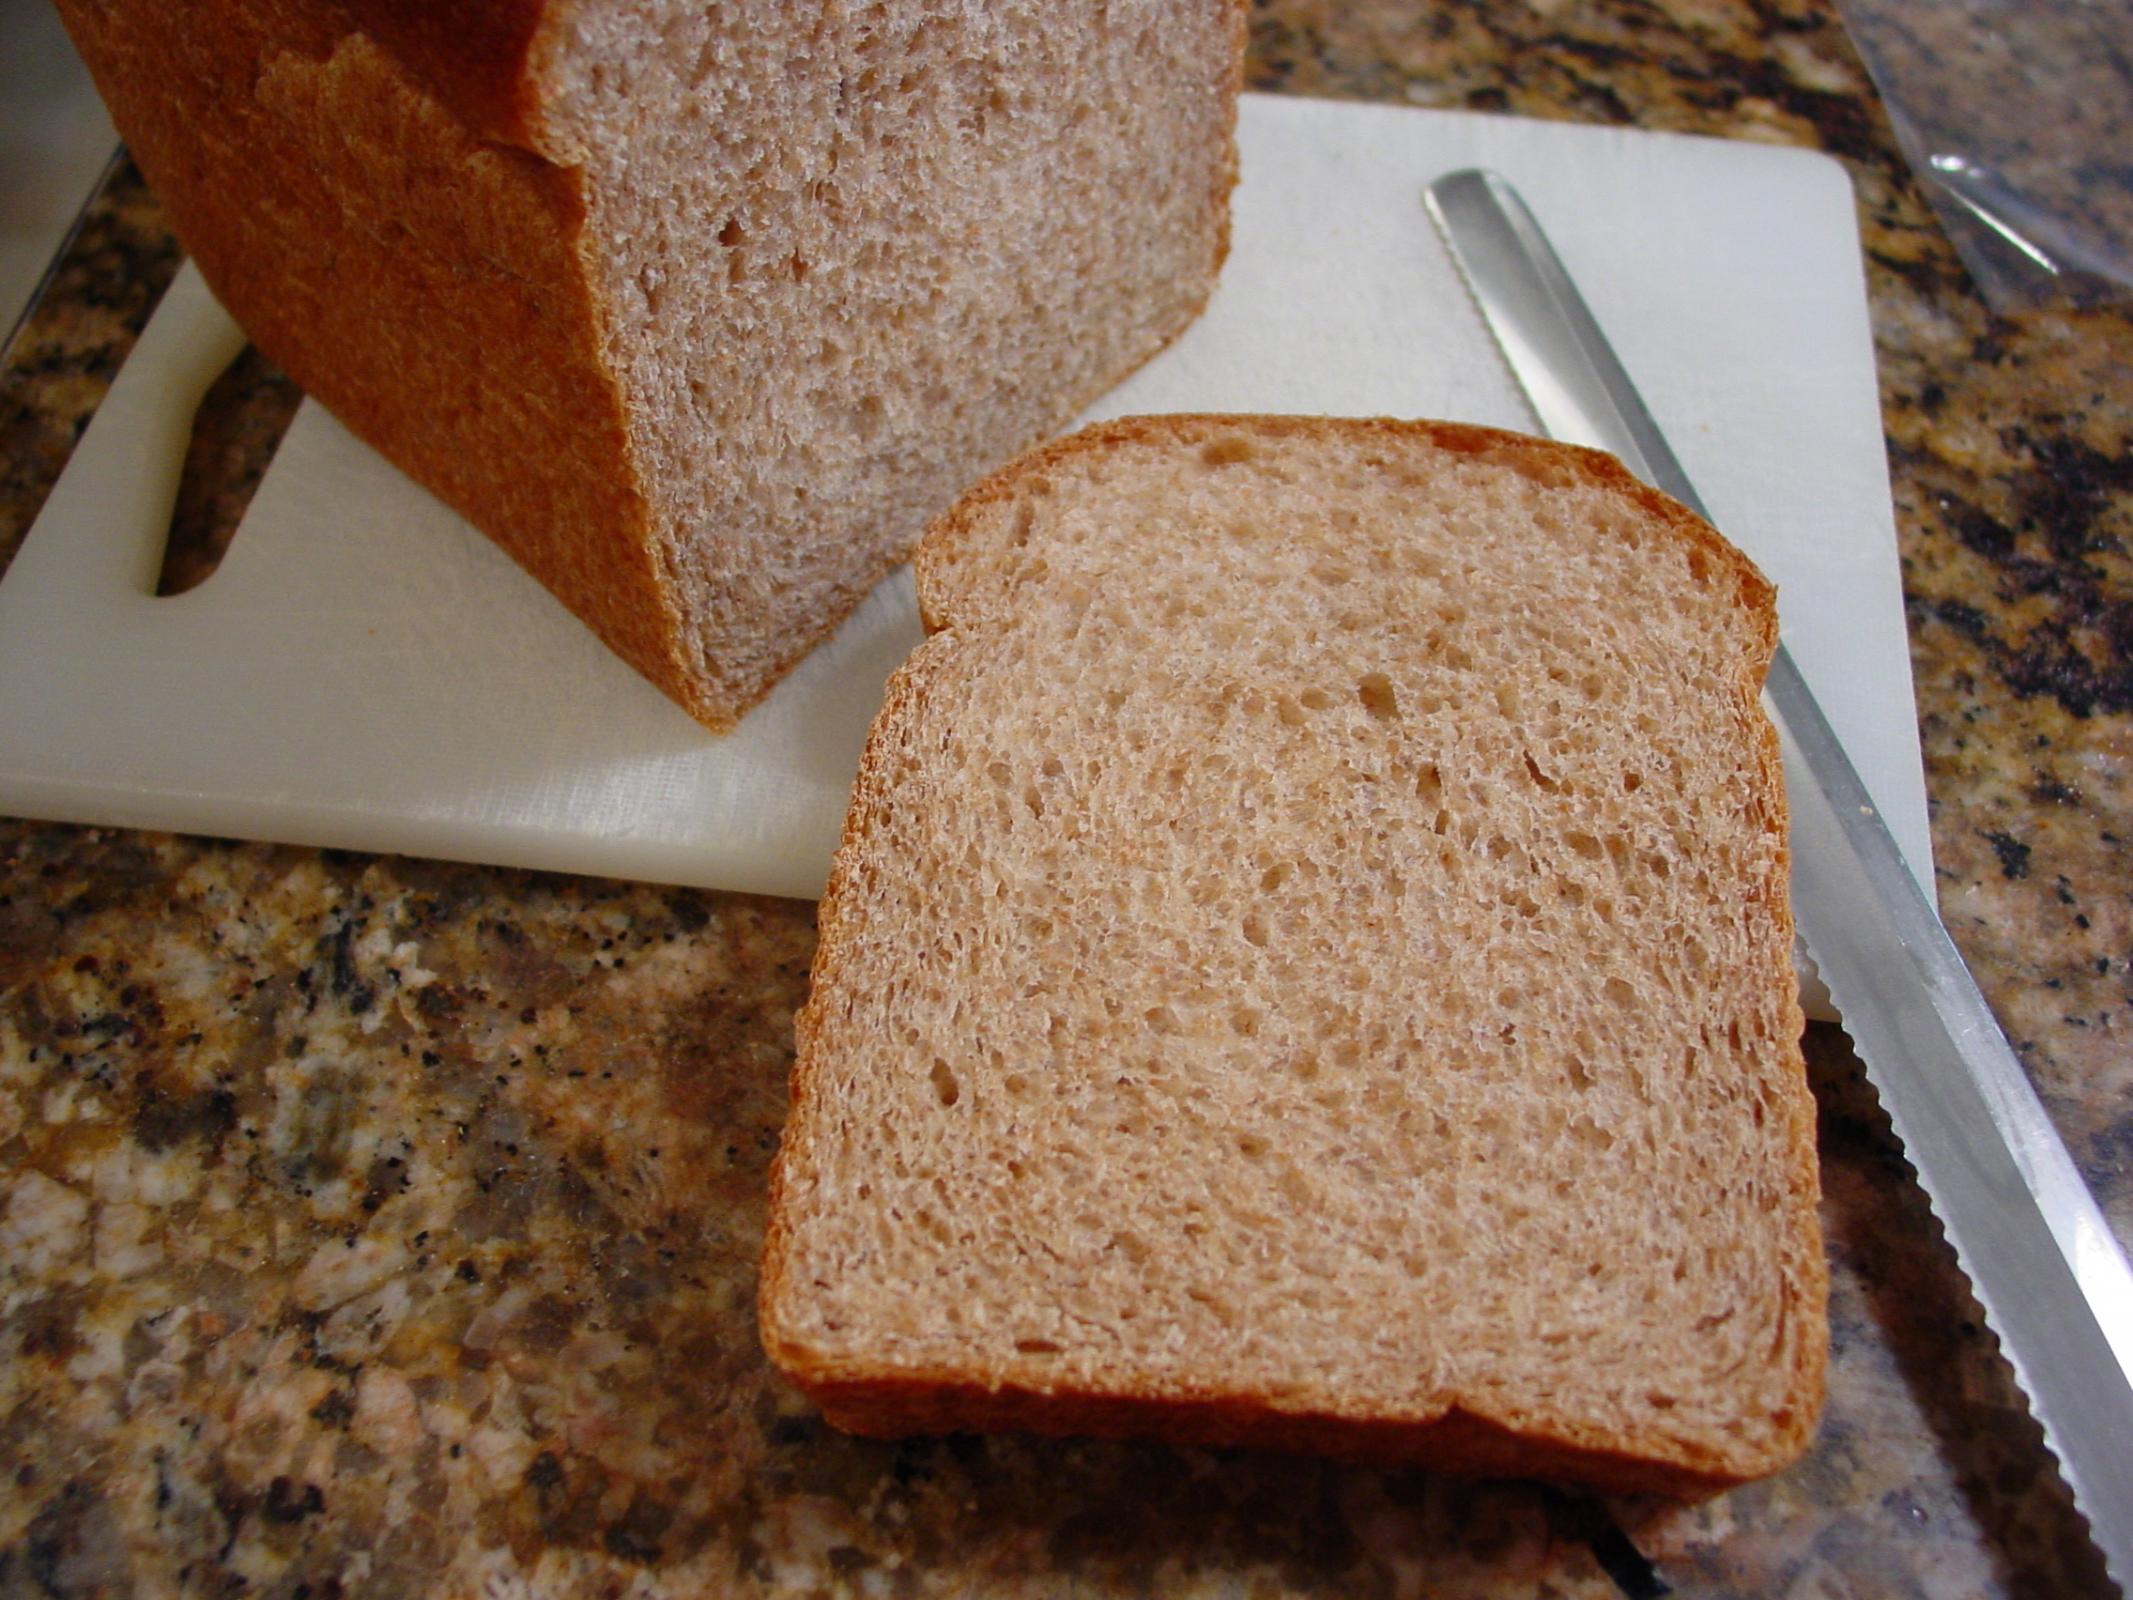 100% whole wheat sandwich bread